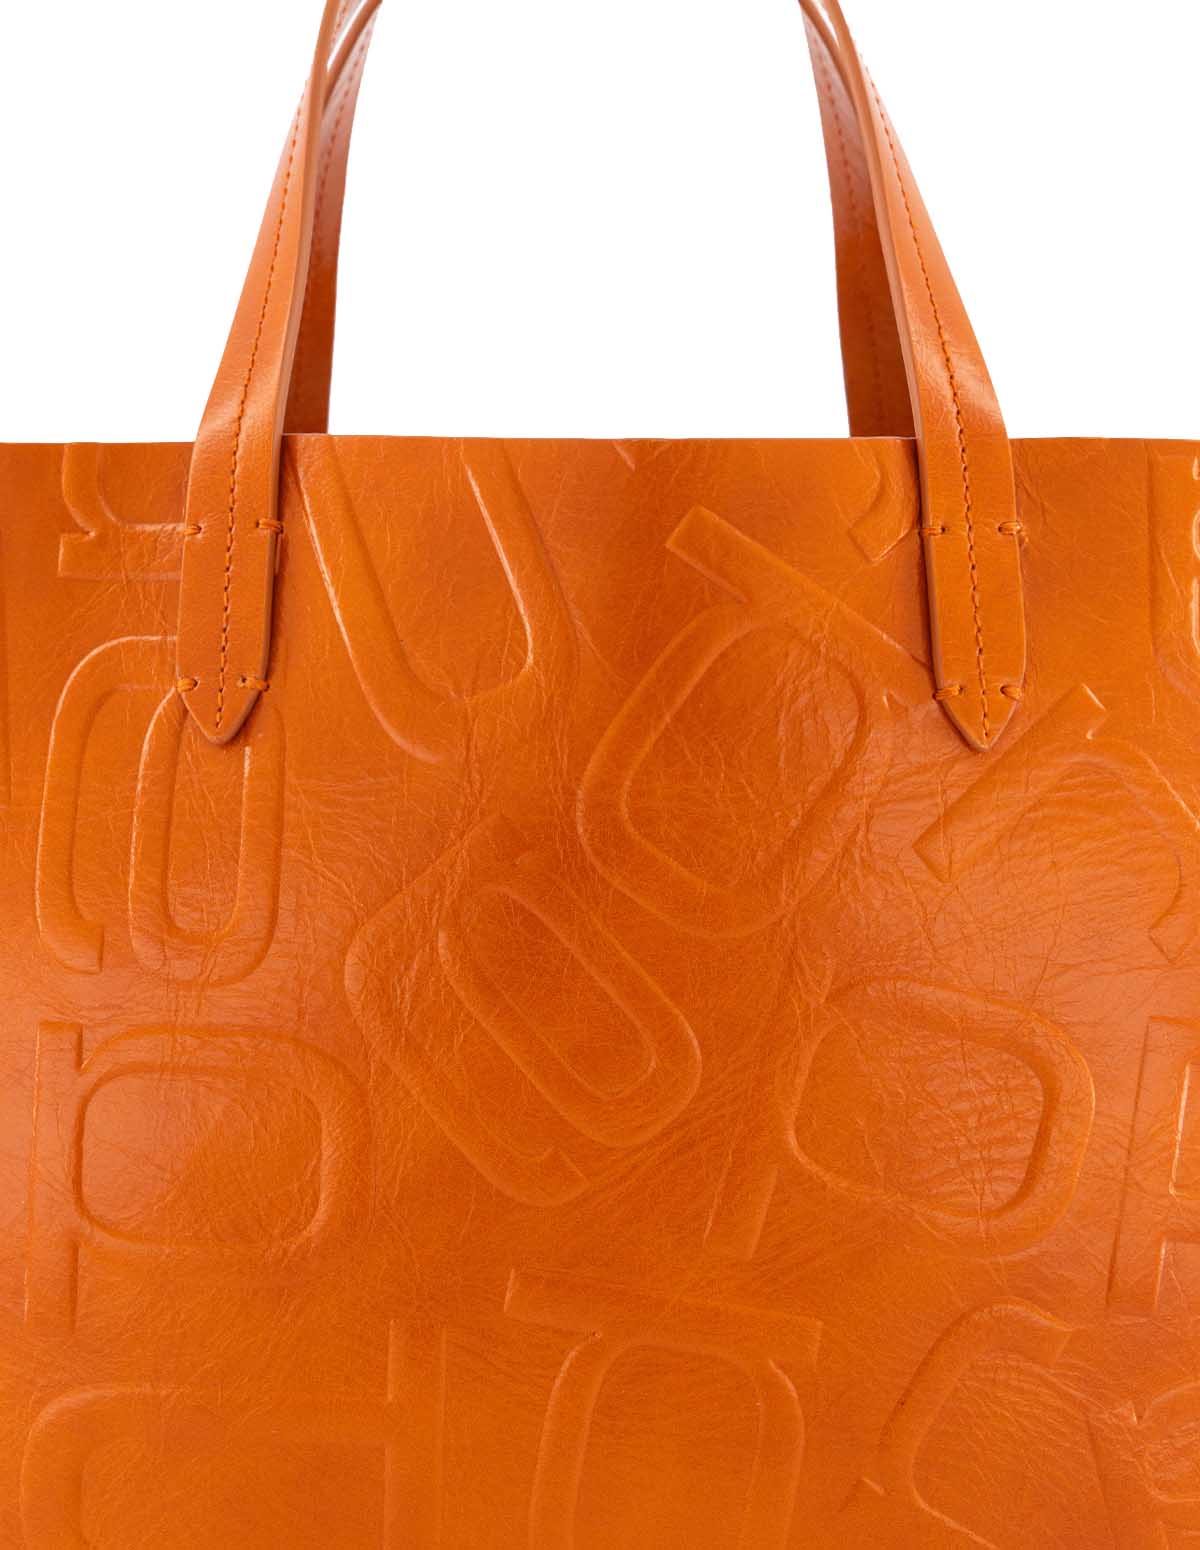 Bolso shopper anagrama letras Prada en piel color naranja para mujer